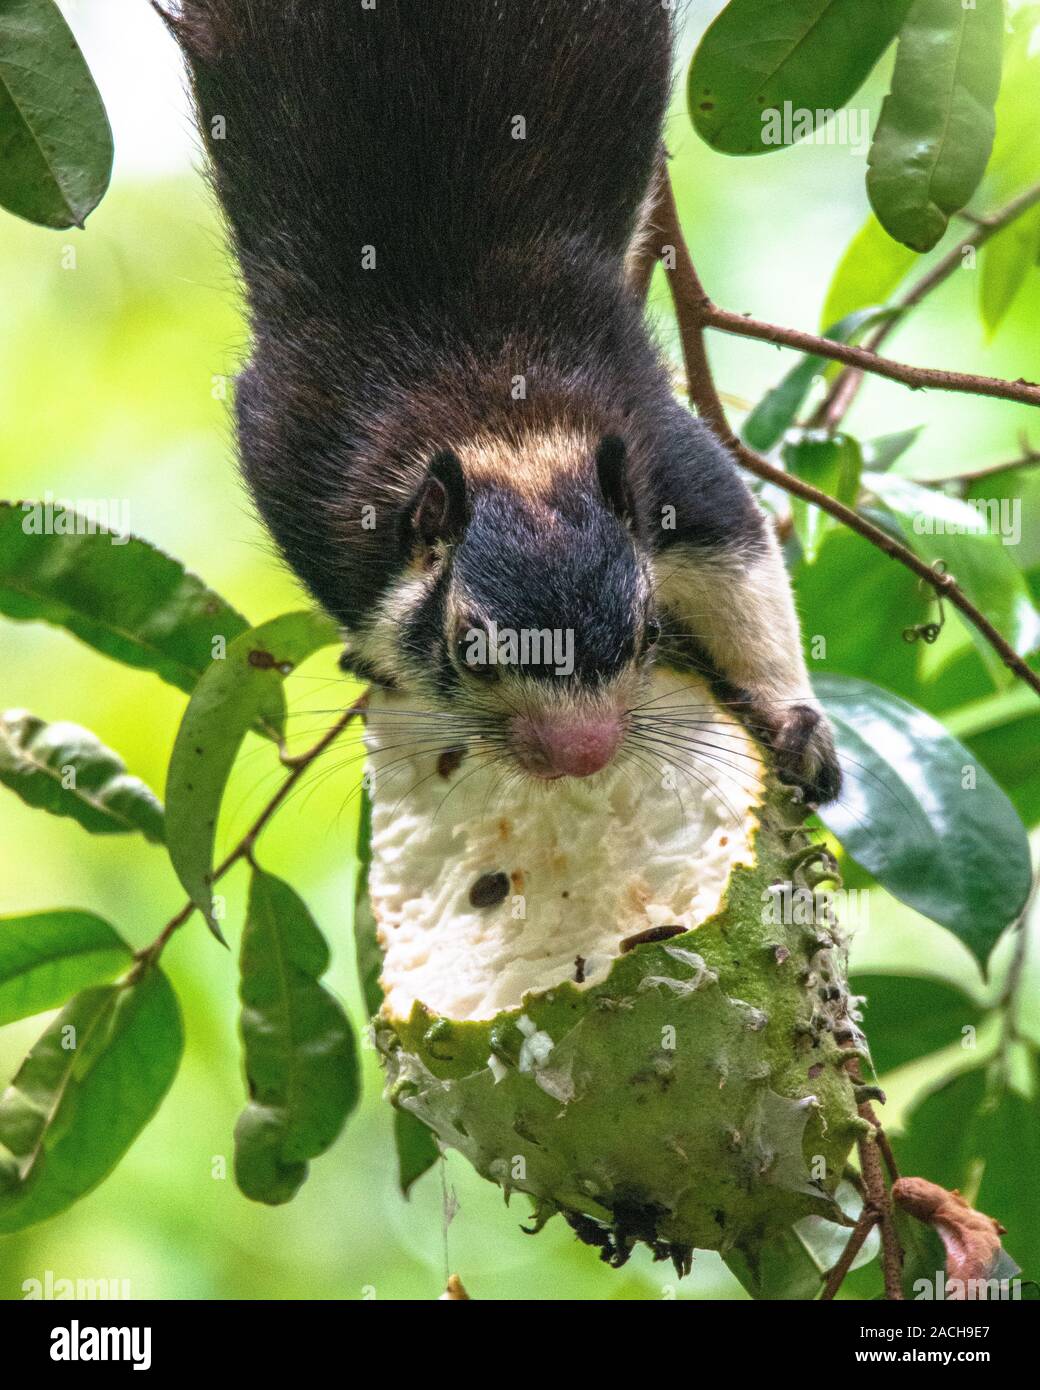 Die indische Riese Eichhörnchen, oder Malabar Riese Eichhörnchen, ist ein großer Baum Eichhörnchen Arten in der Gattung Ratufa native auf Wälder und Forsten in Indien. Ich Stockfoto